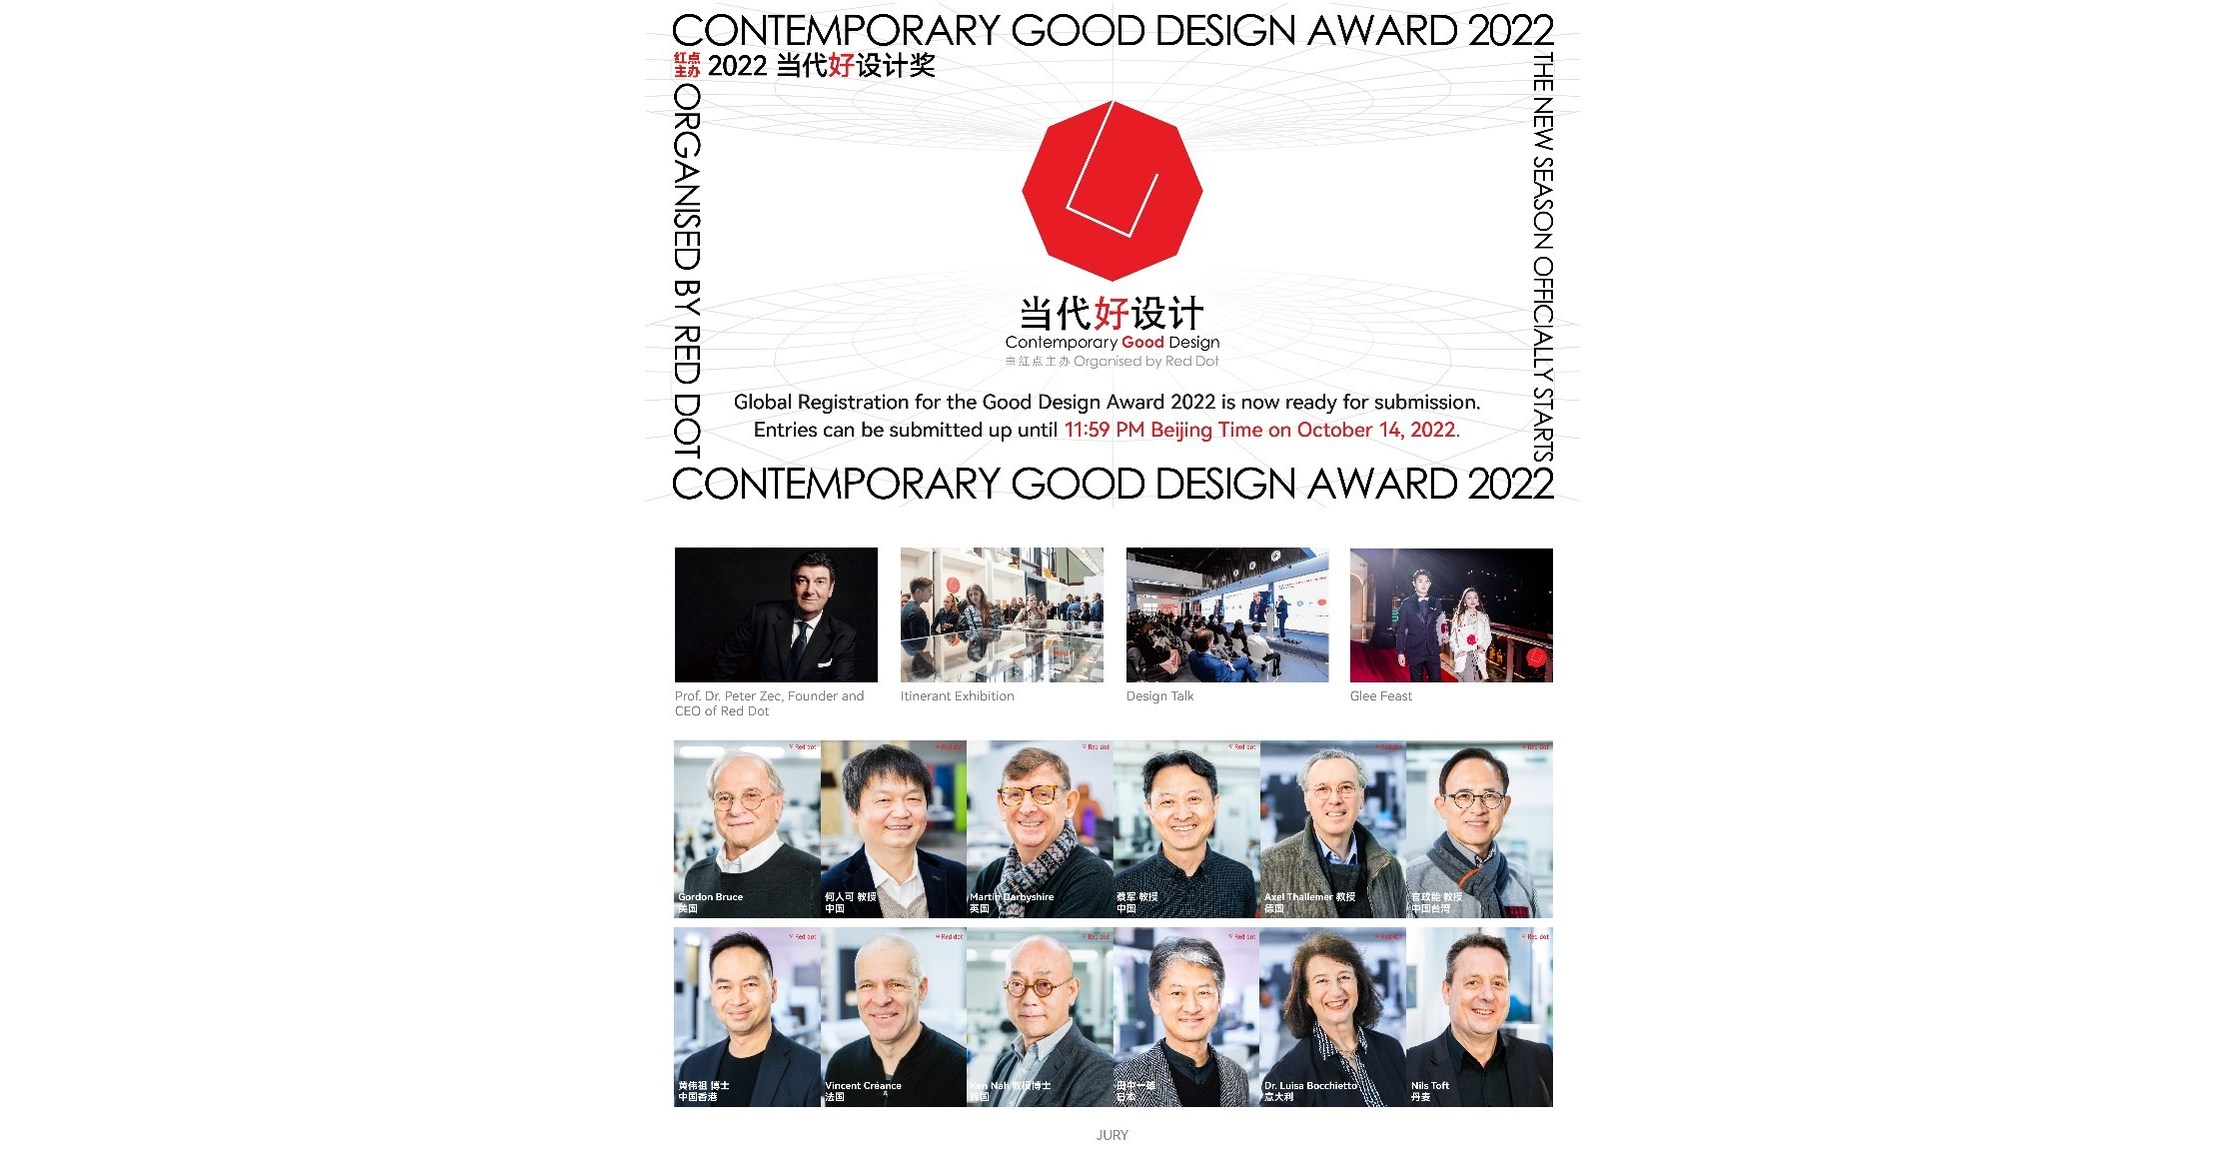 2022 年当代优秀设计奖邀请全球参与